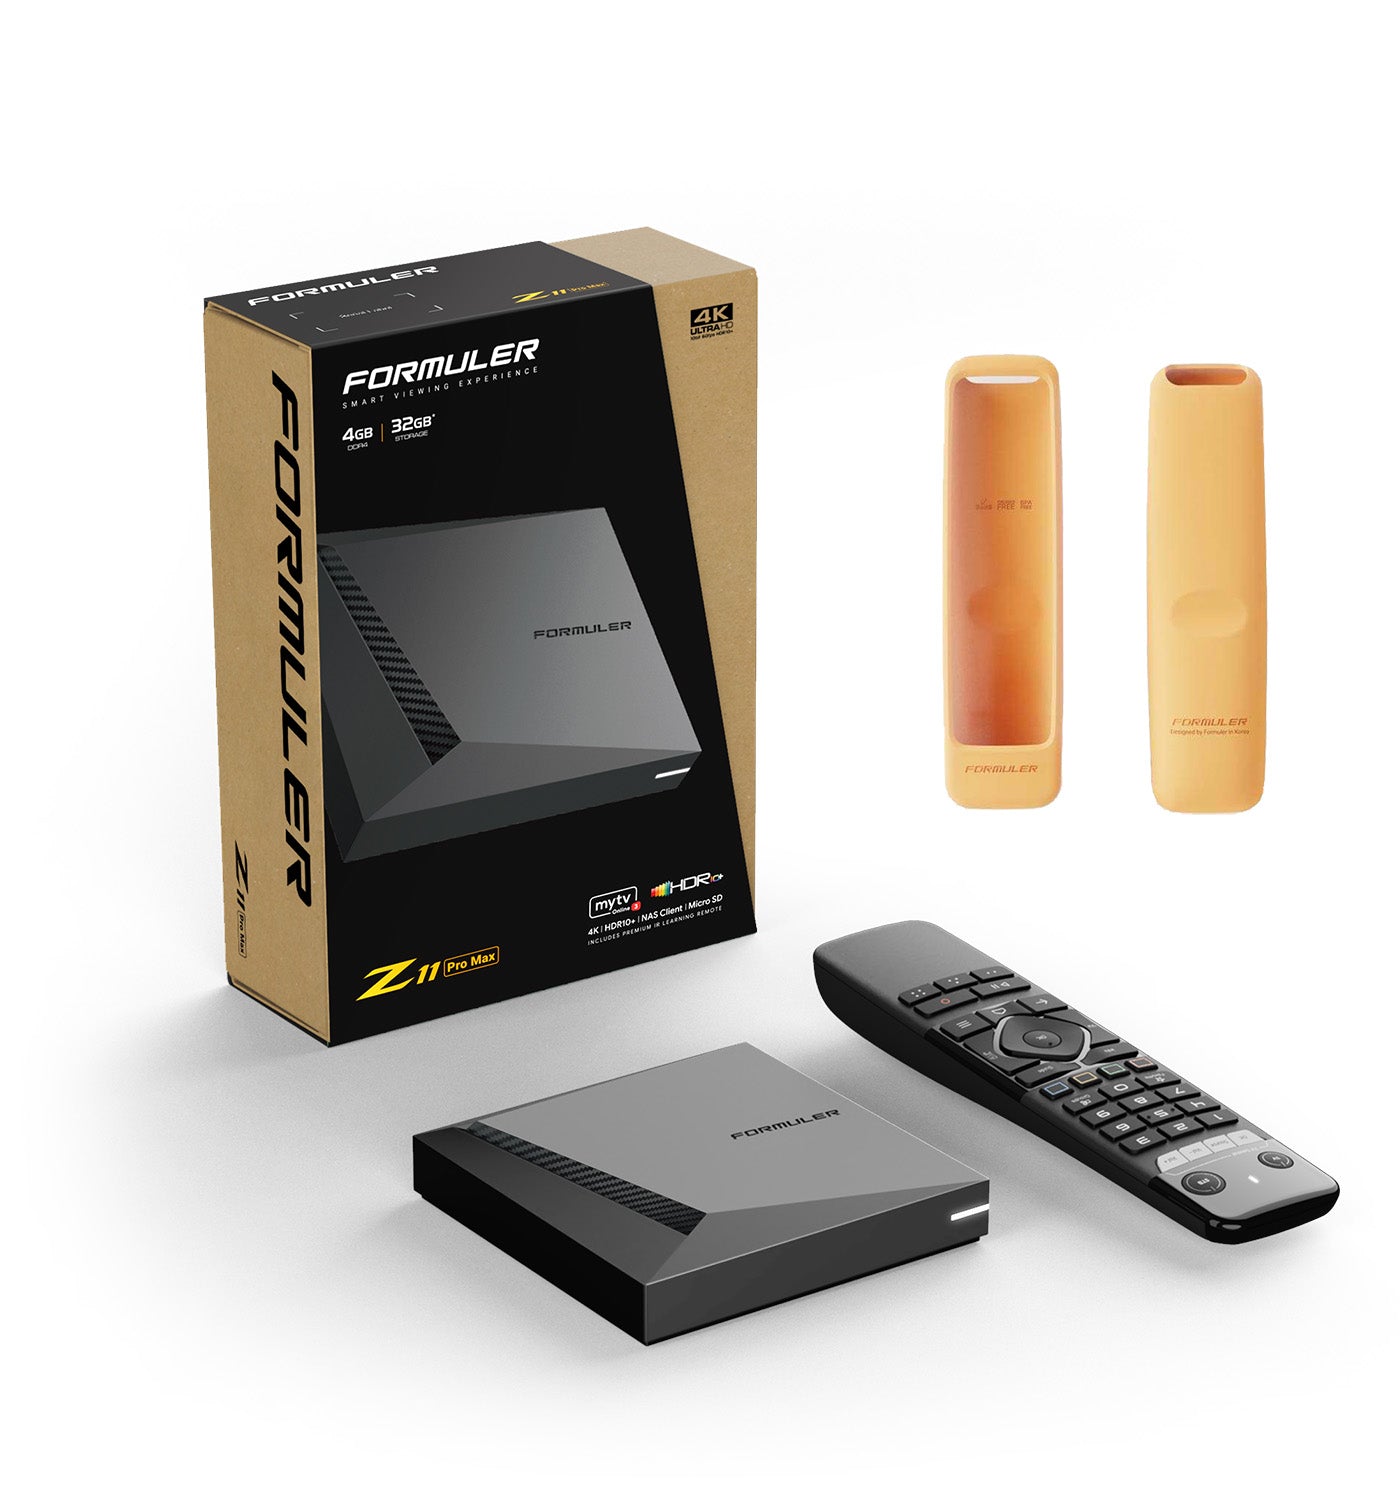 Formuler Z11 Pro Max + FREE ACCESSORY: 1x orange remote cover